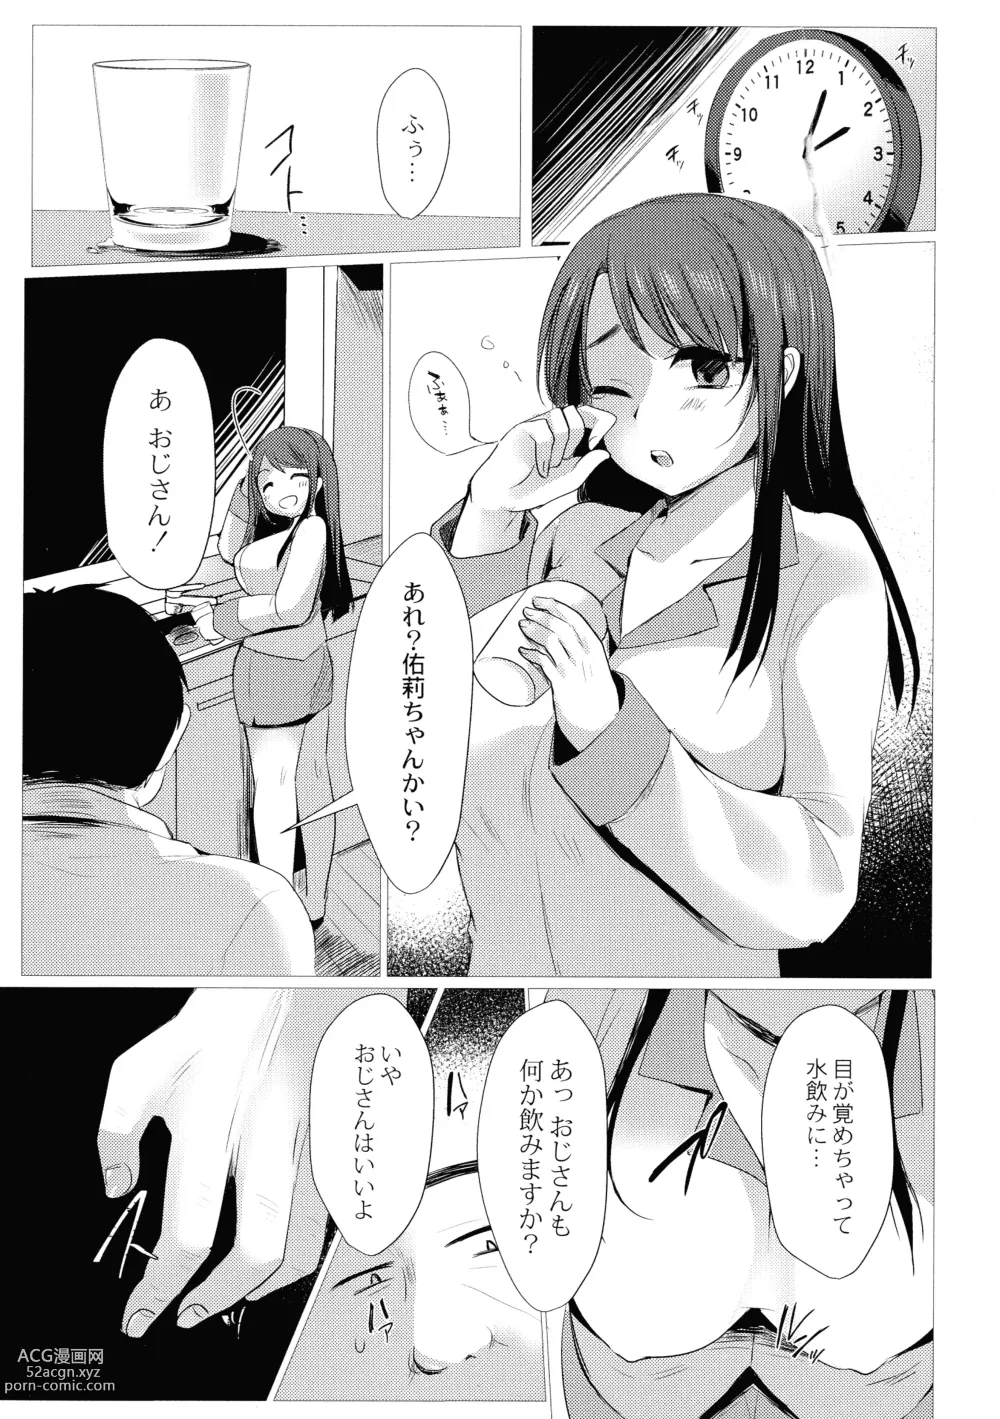 Page 9 of manga Mesuochi.